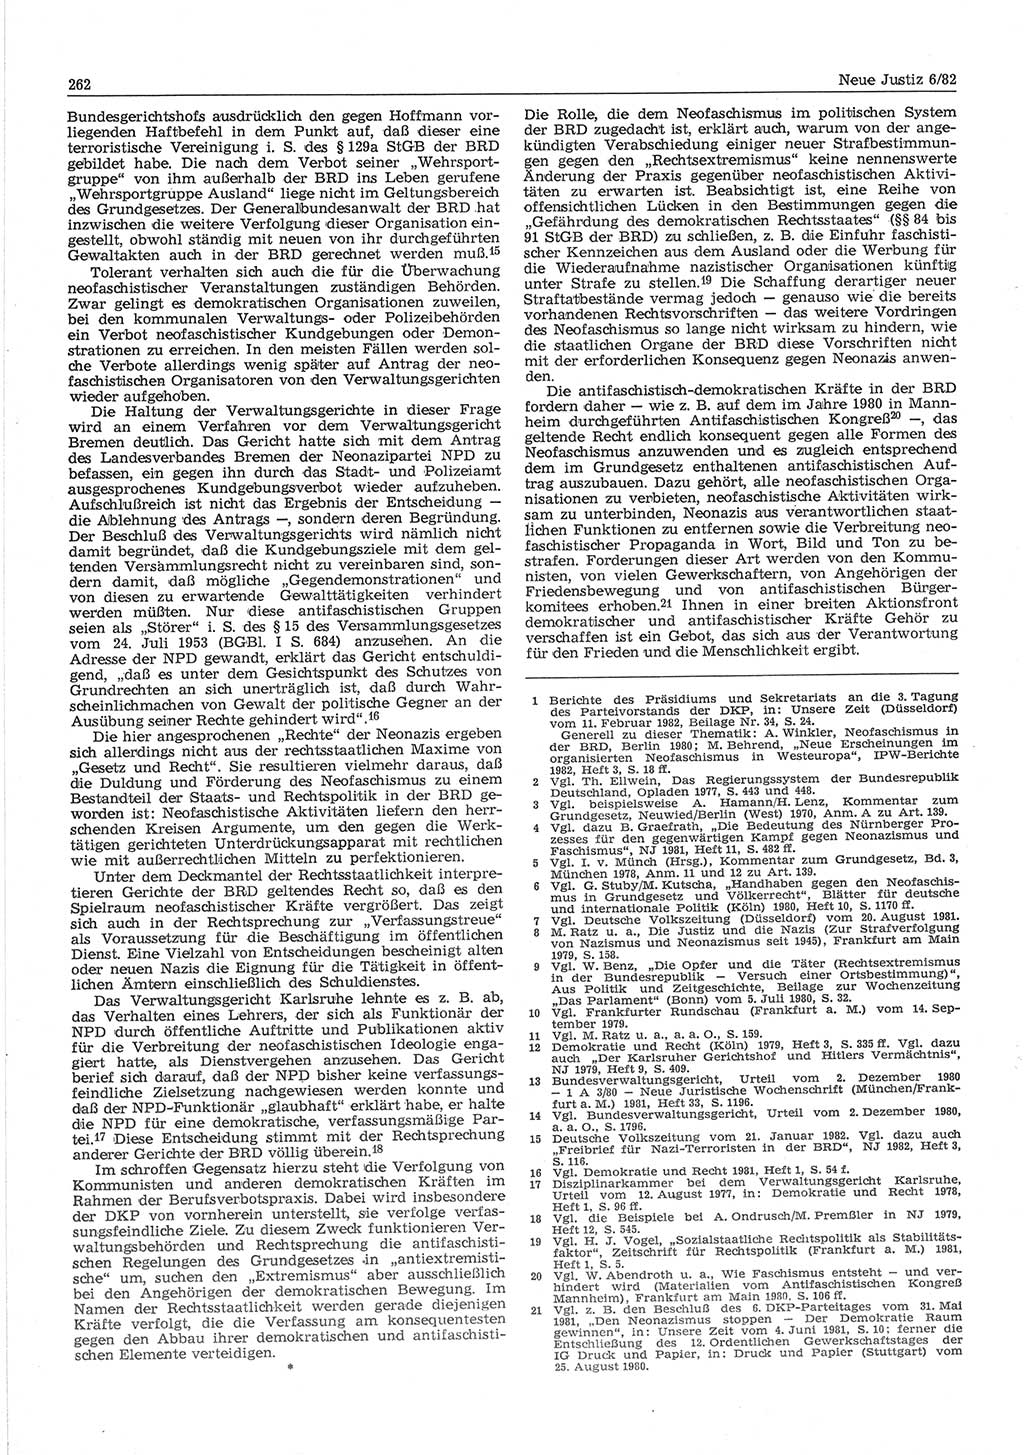 Neue Justiz (NJ), Zeitschrift für sozialistisches Recht und Gesetzlichkeit [Deutsche Demokratische Republik (DDR)], 36. Jahrgang 1982, Seite 262 (NJ DDR 1982, S. 262)